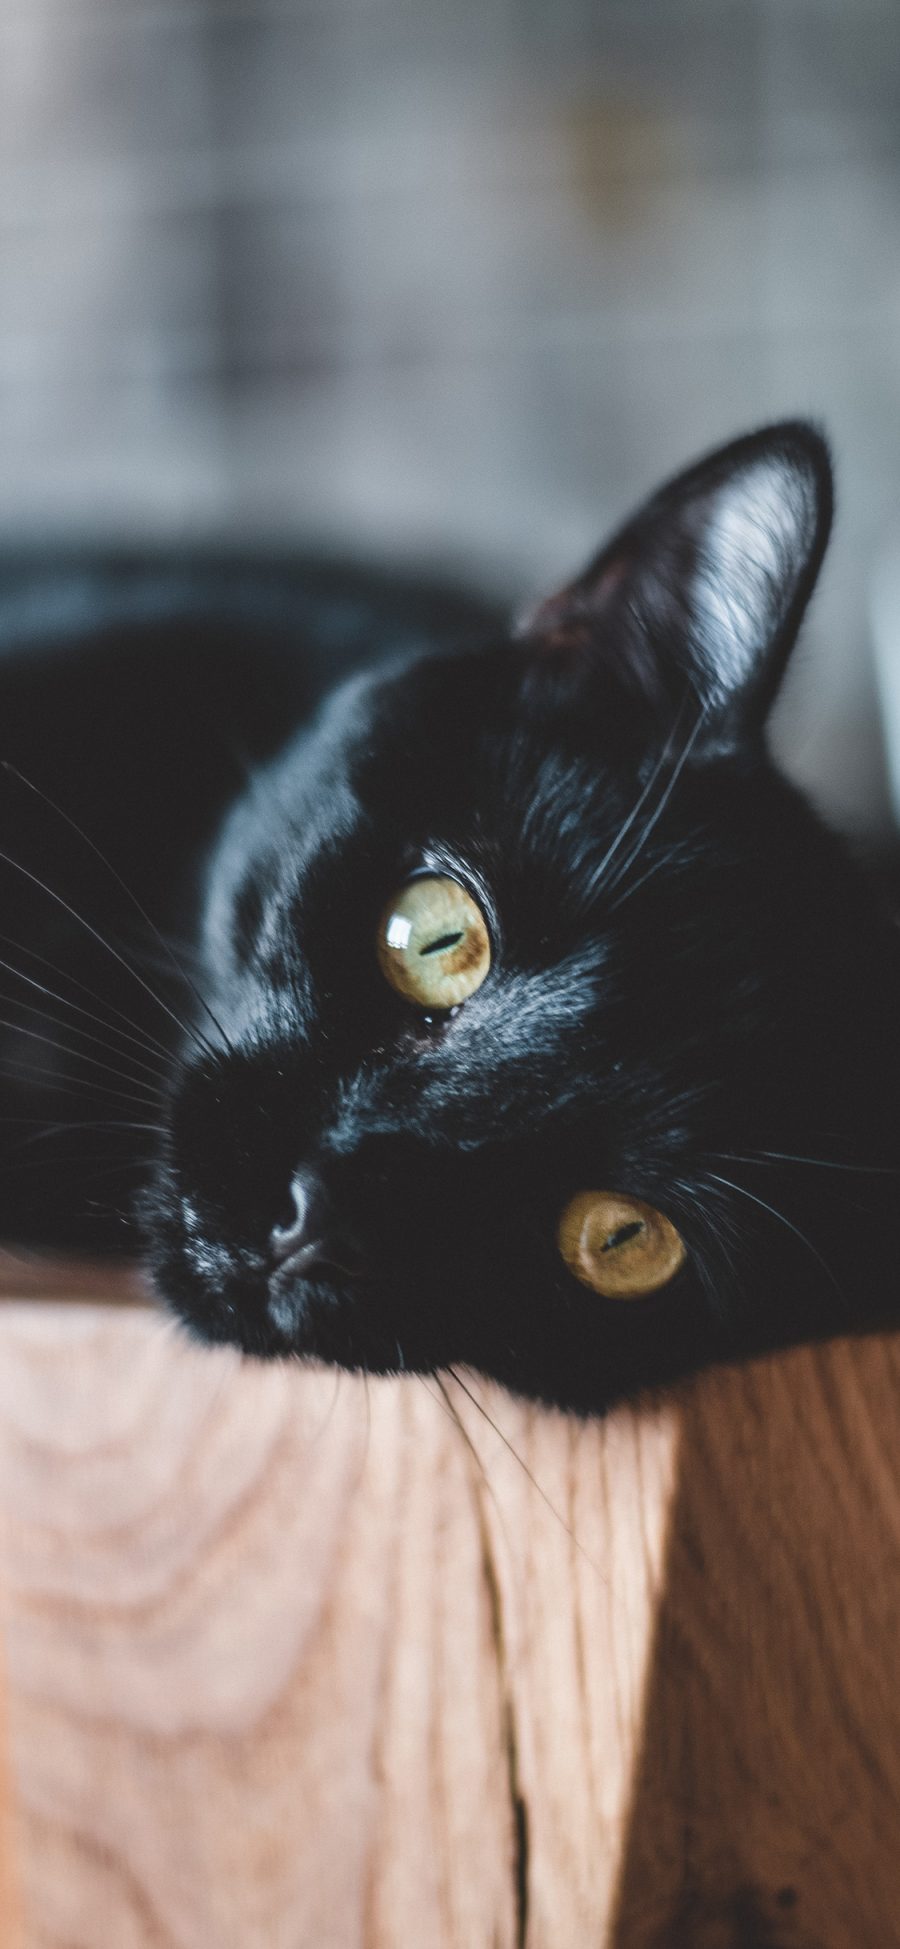 [2436×1125]宠物 猫咪 黑猫 喵星人 苹果手机壁纸图片